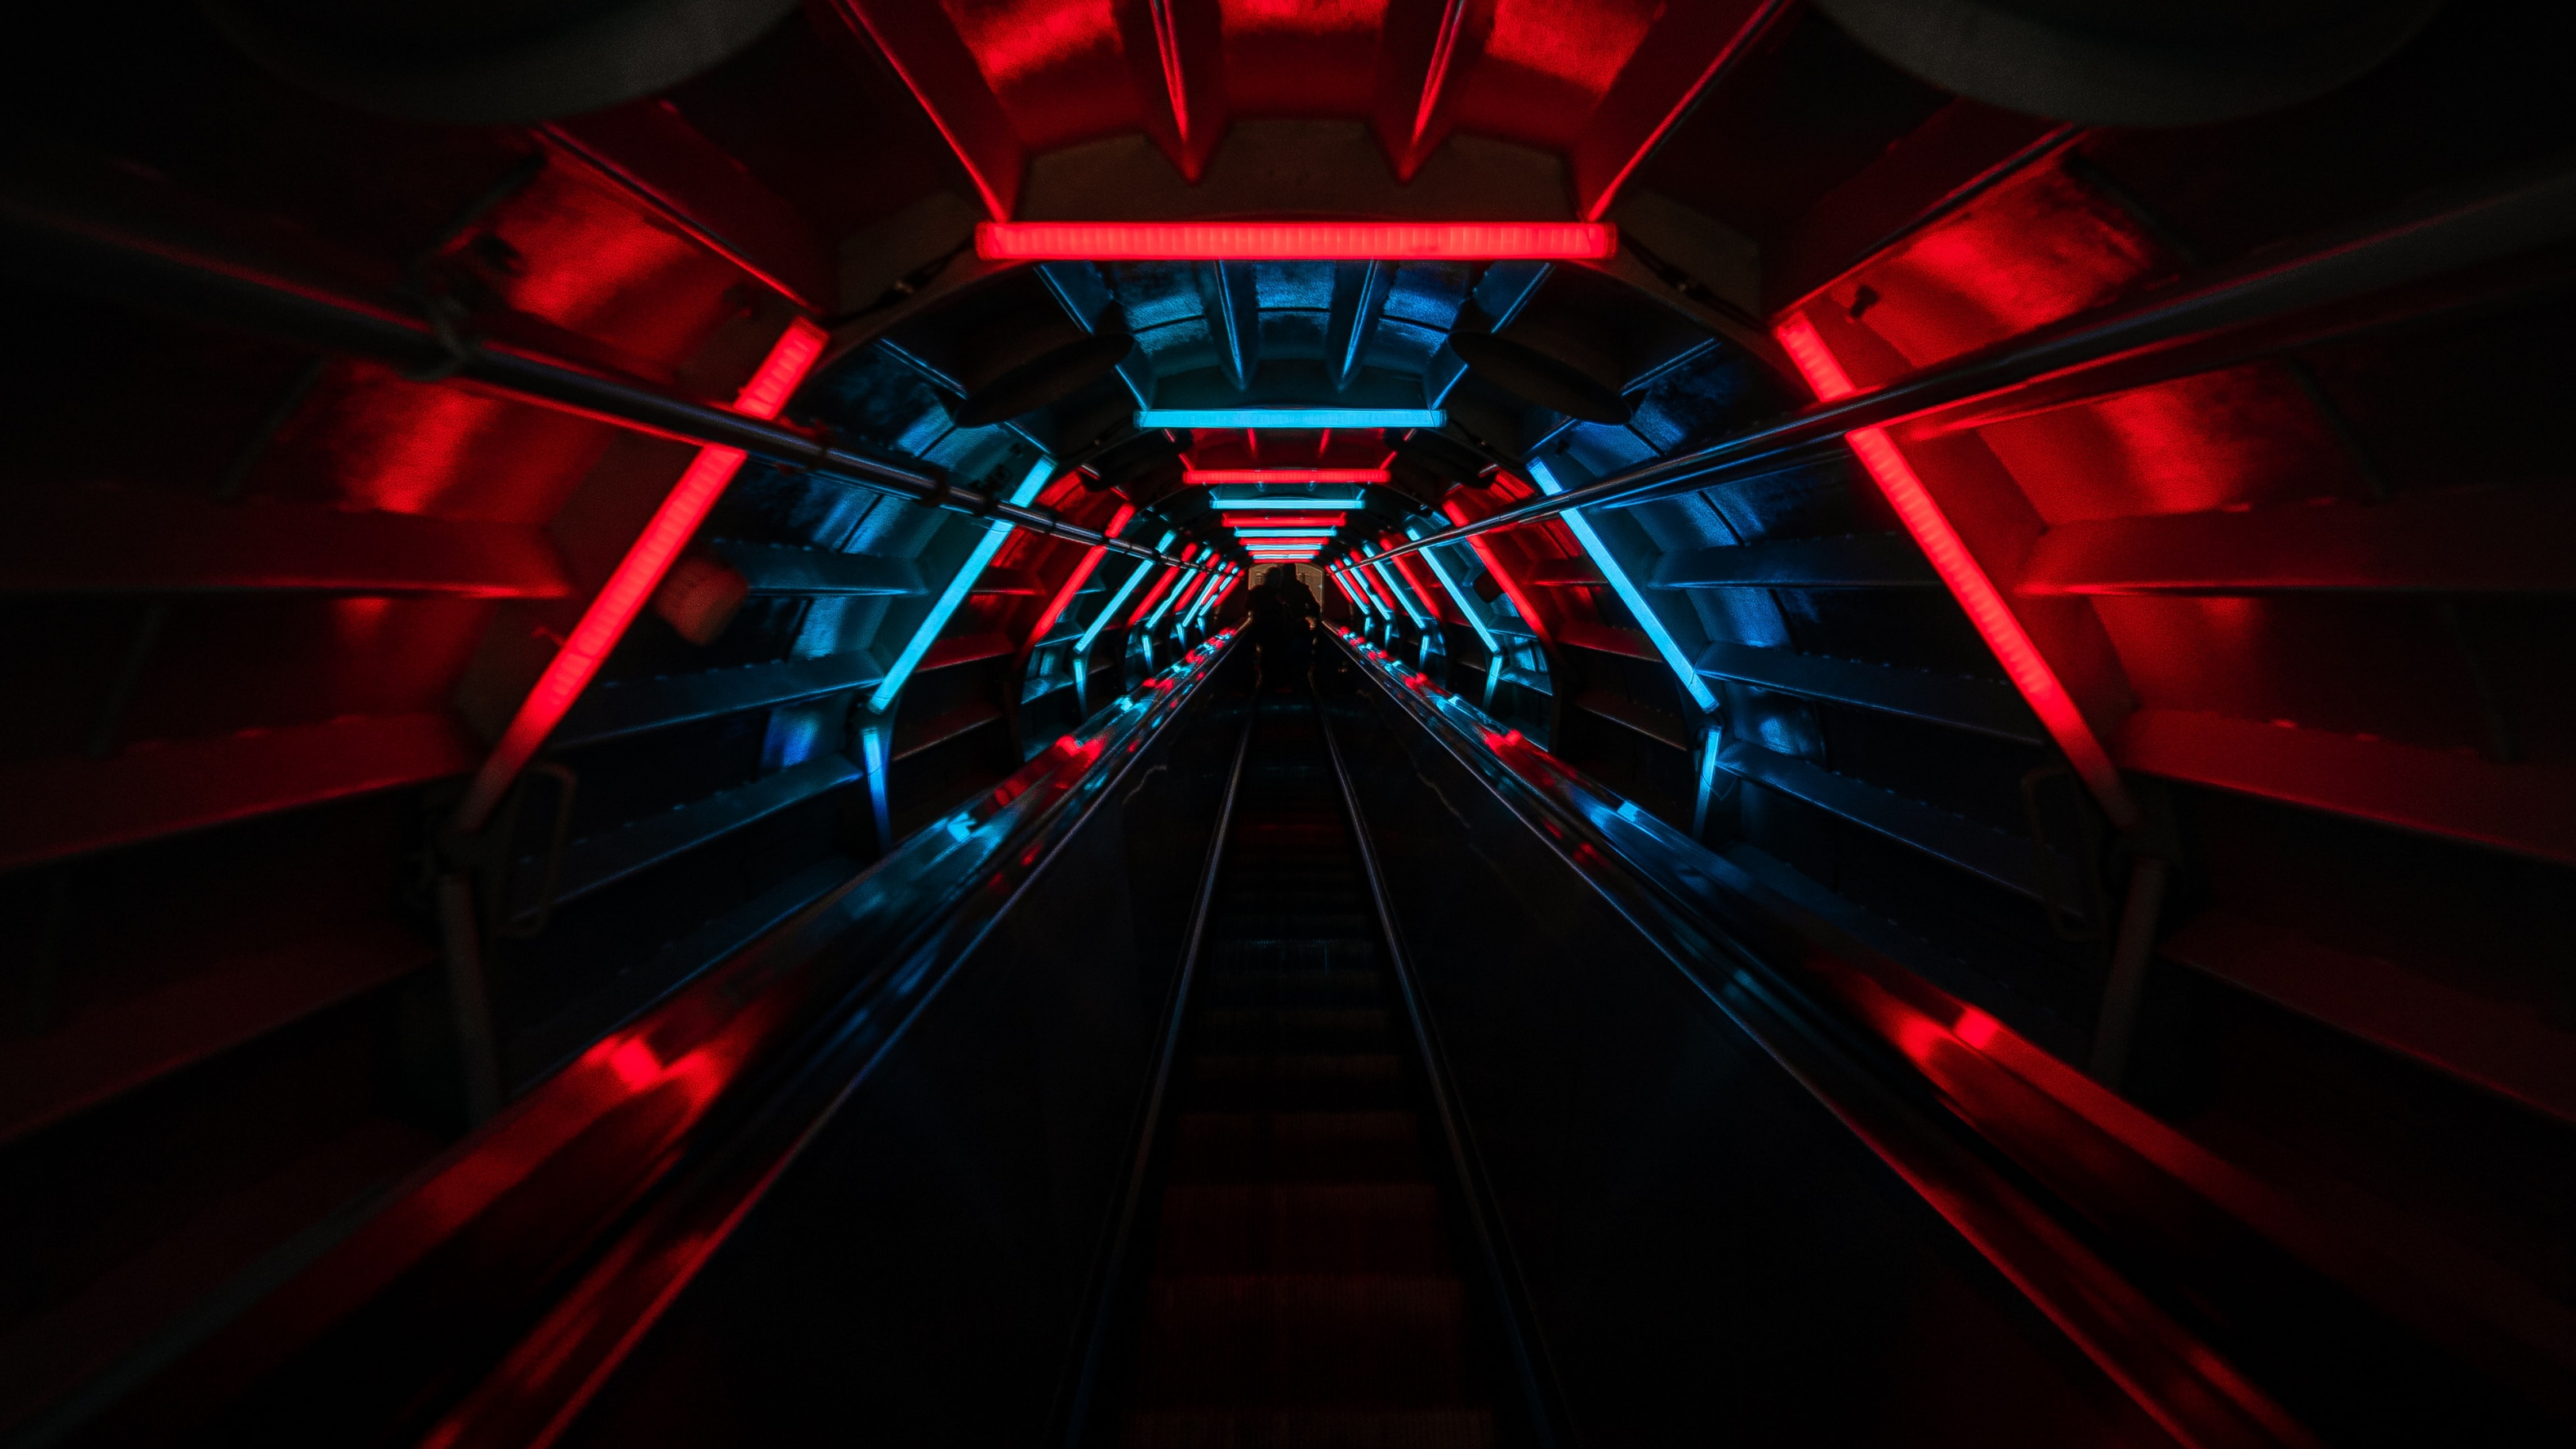 Hầm đen đỏ: Hầm đen đỏ luôn là một địa điểm hấp dẫn cho những nhà nhiếp ảnh. Hãy nhấp vào ảnh đính kèm để khám phá những bức ảnh hầm đen đỏ đầy bí ẩn và hấp dẫn.